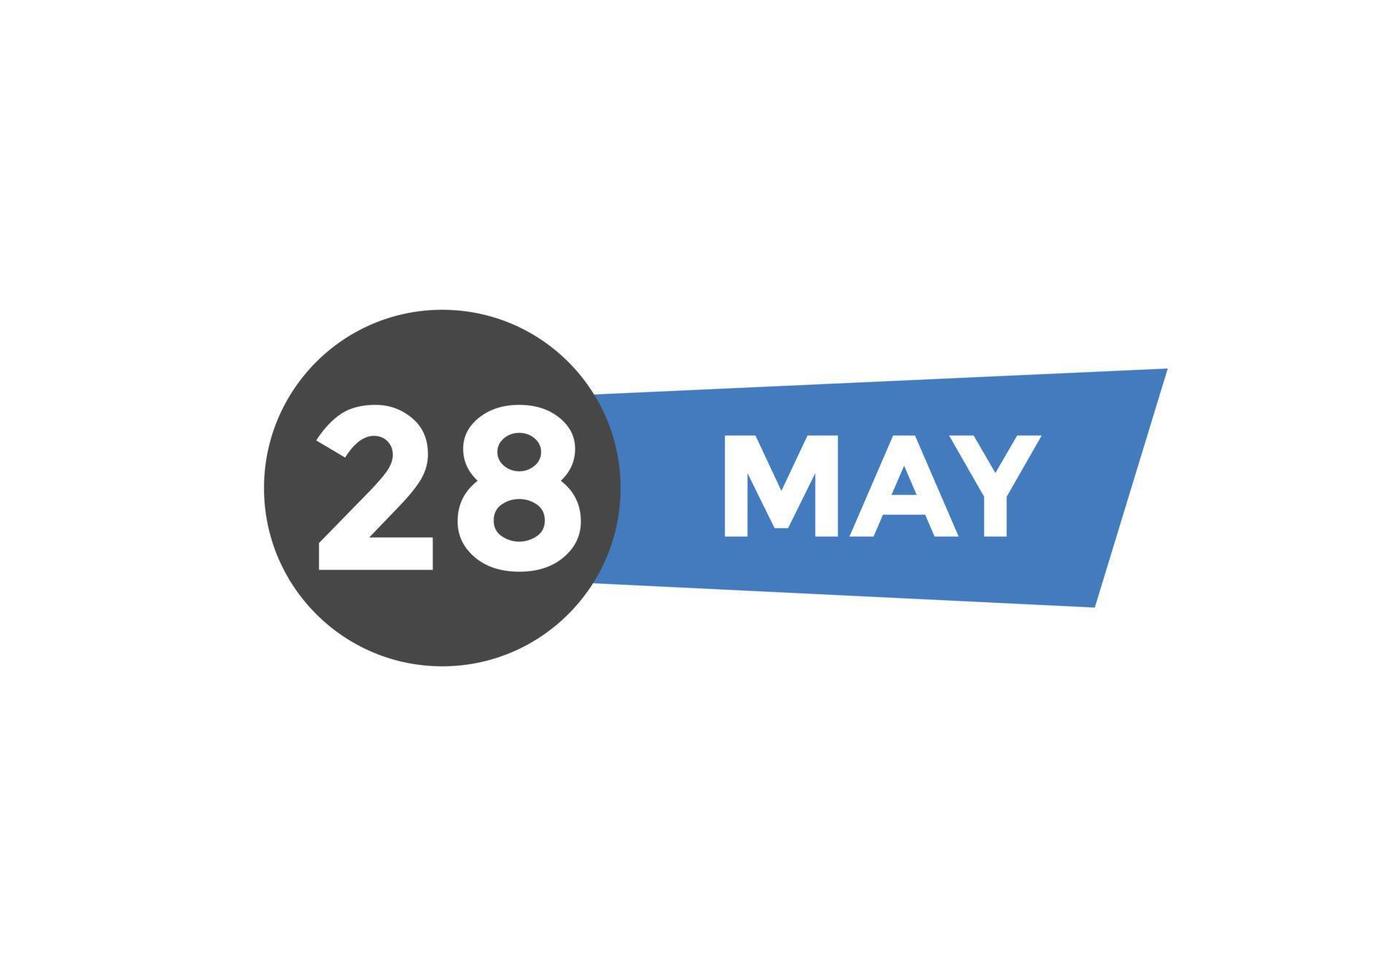 28 de mayo calendario recordatorio. Plantilla de icono de calendario diario del 28 de mayo. plantilla de diseño de icono de calendario 28 de mayo. ilustración vectorial vector